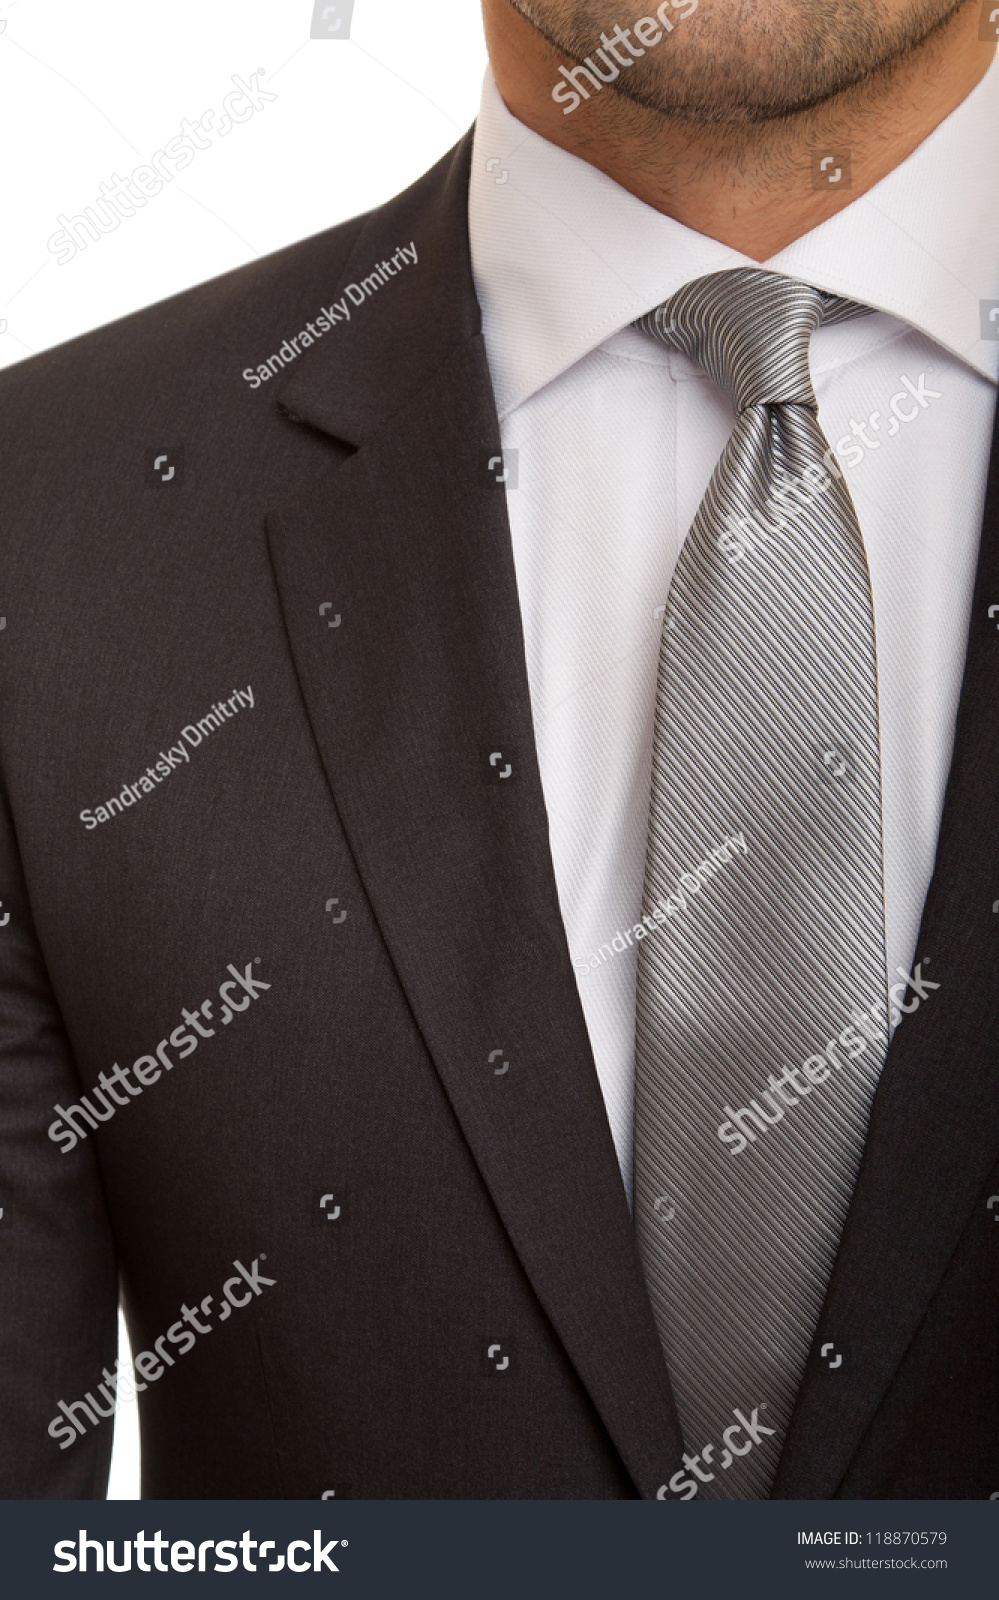 Black Suit Grey Tie Stock Photo 118870579 - Shutterstock